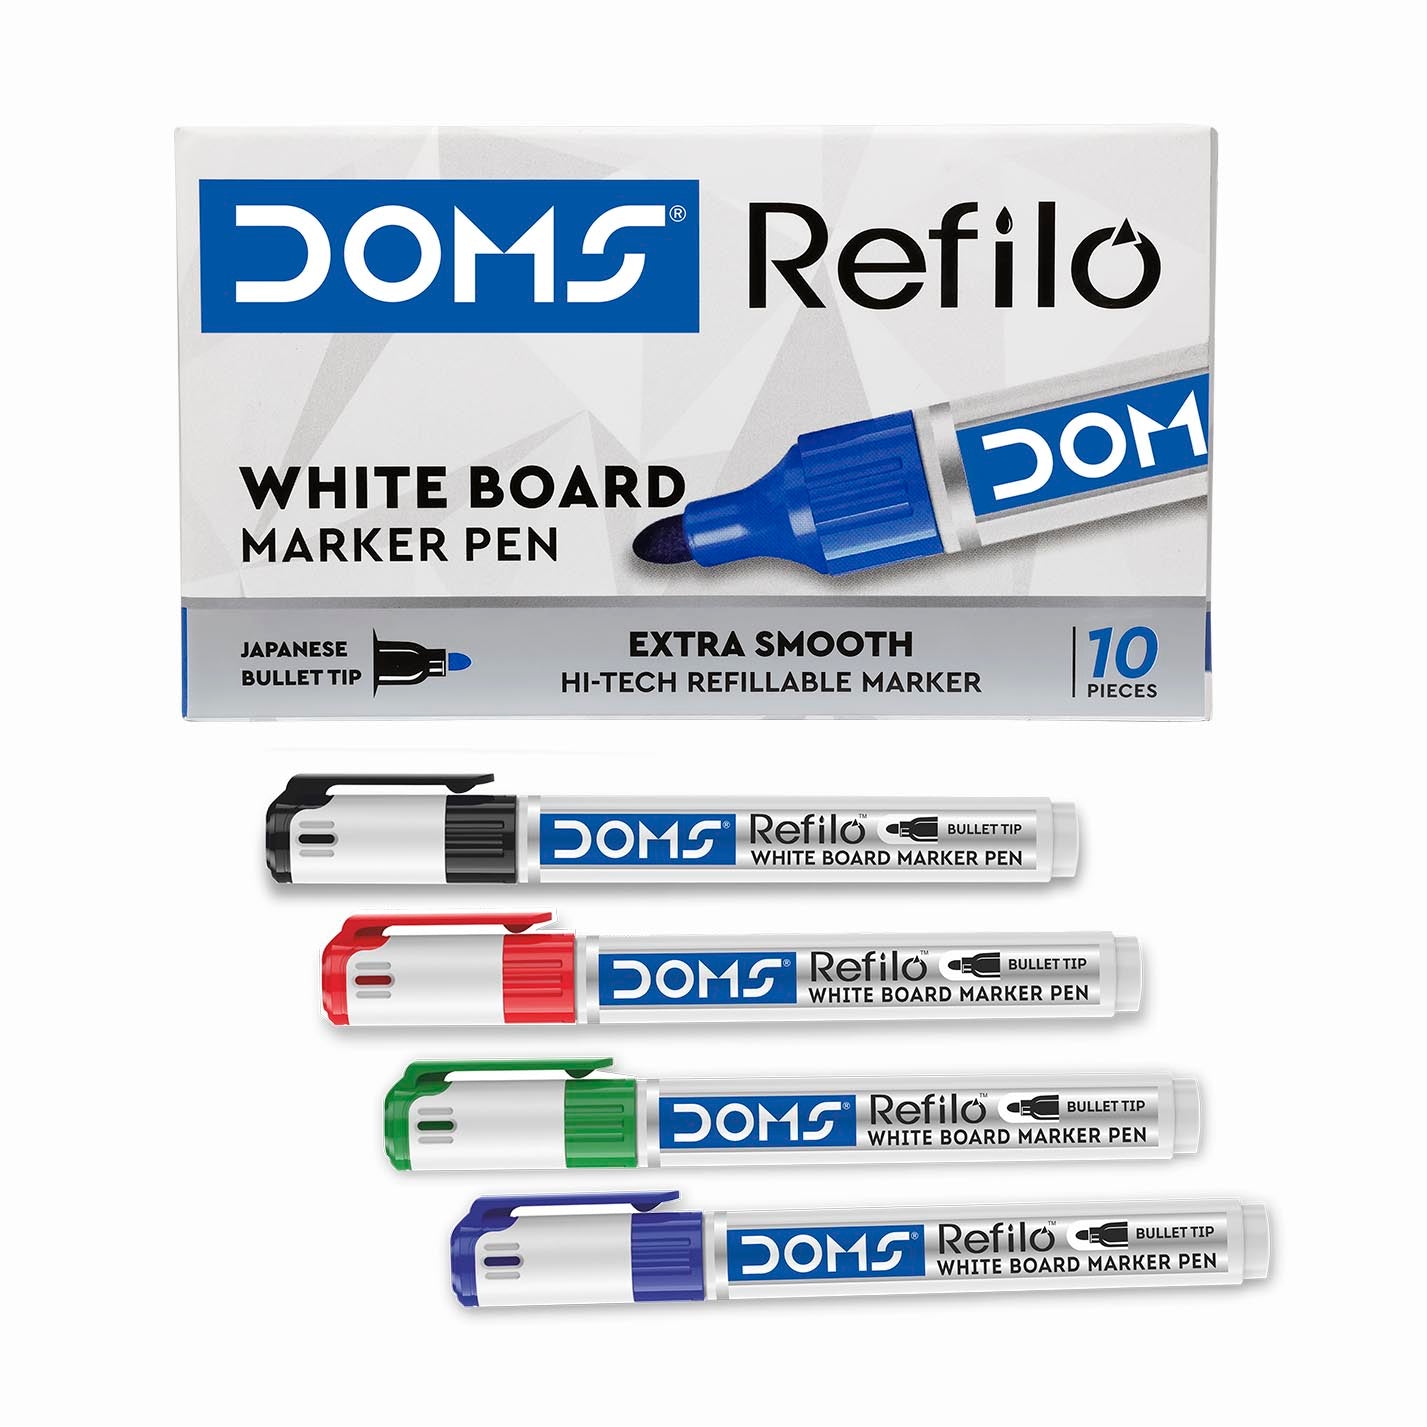 DOMS Refilo White Board Marker Pen - Black 10 Pcs